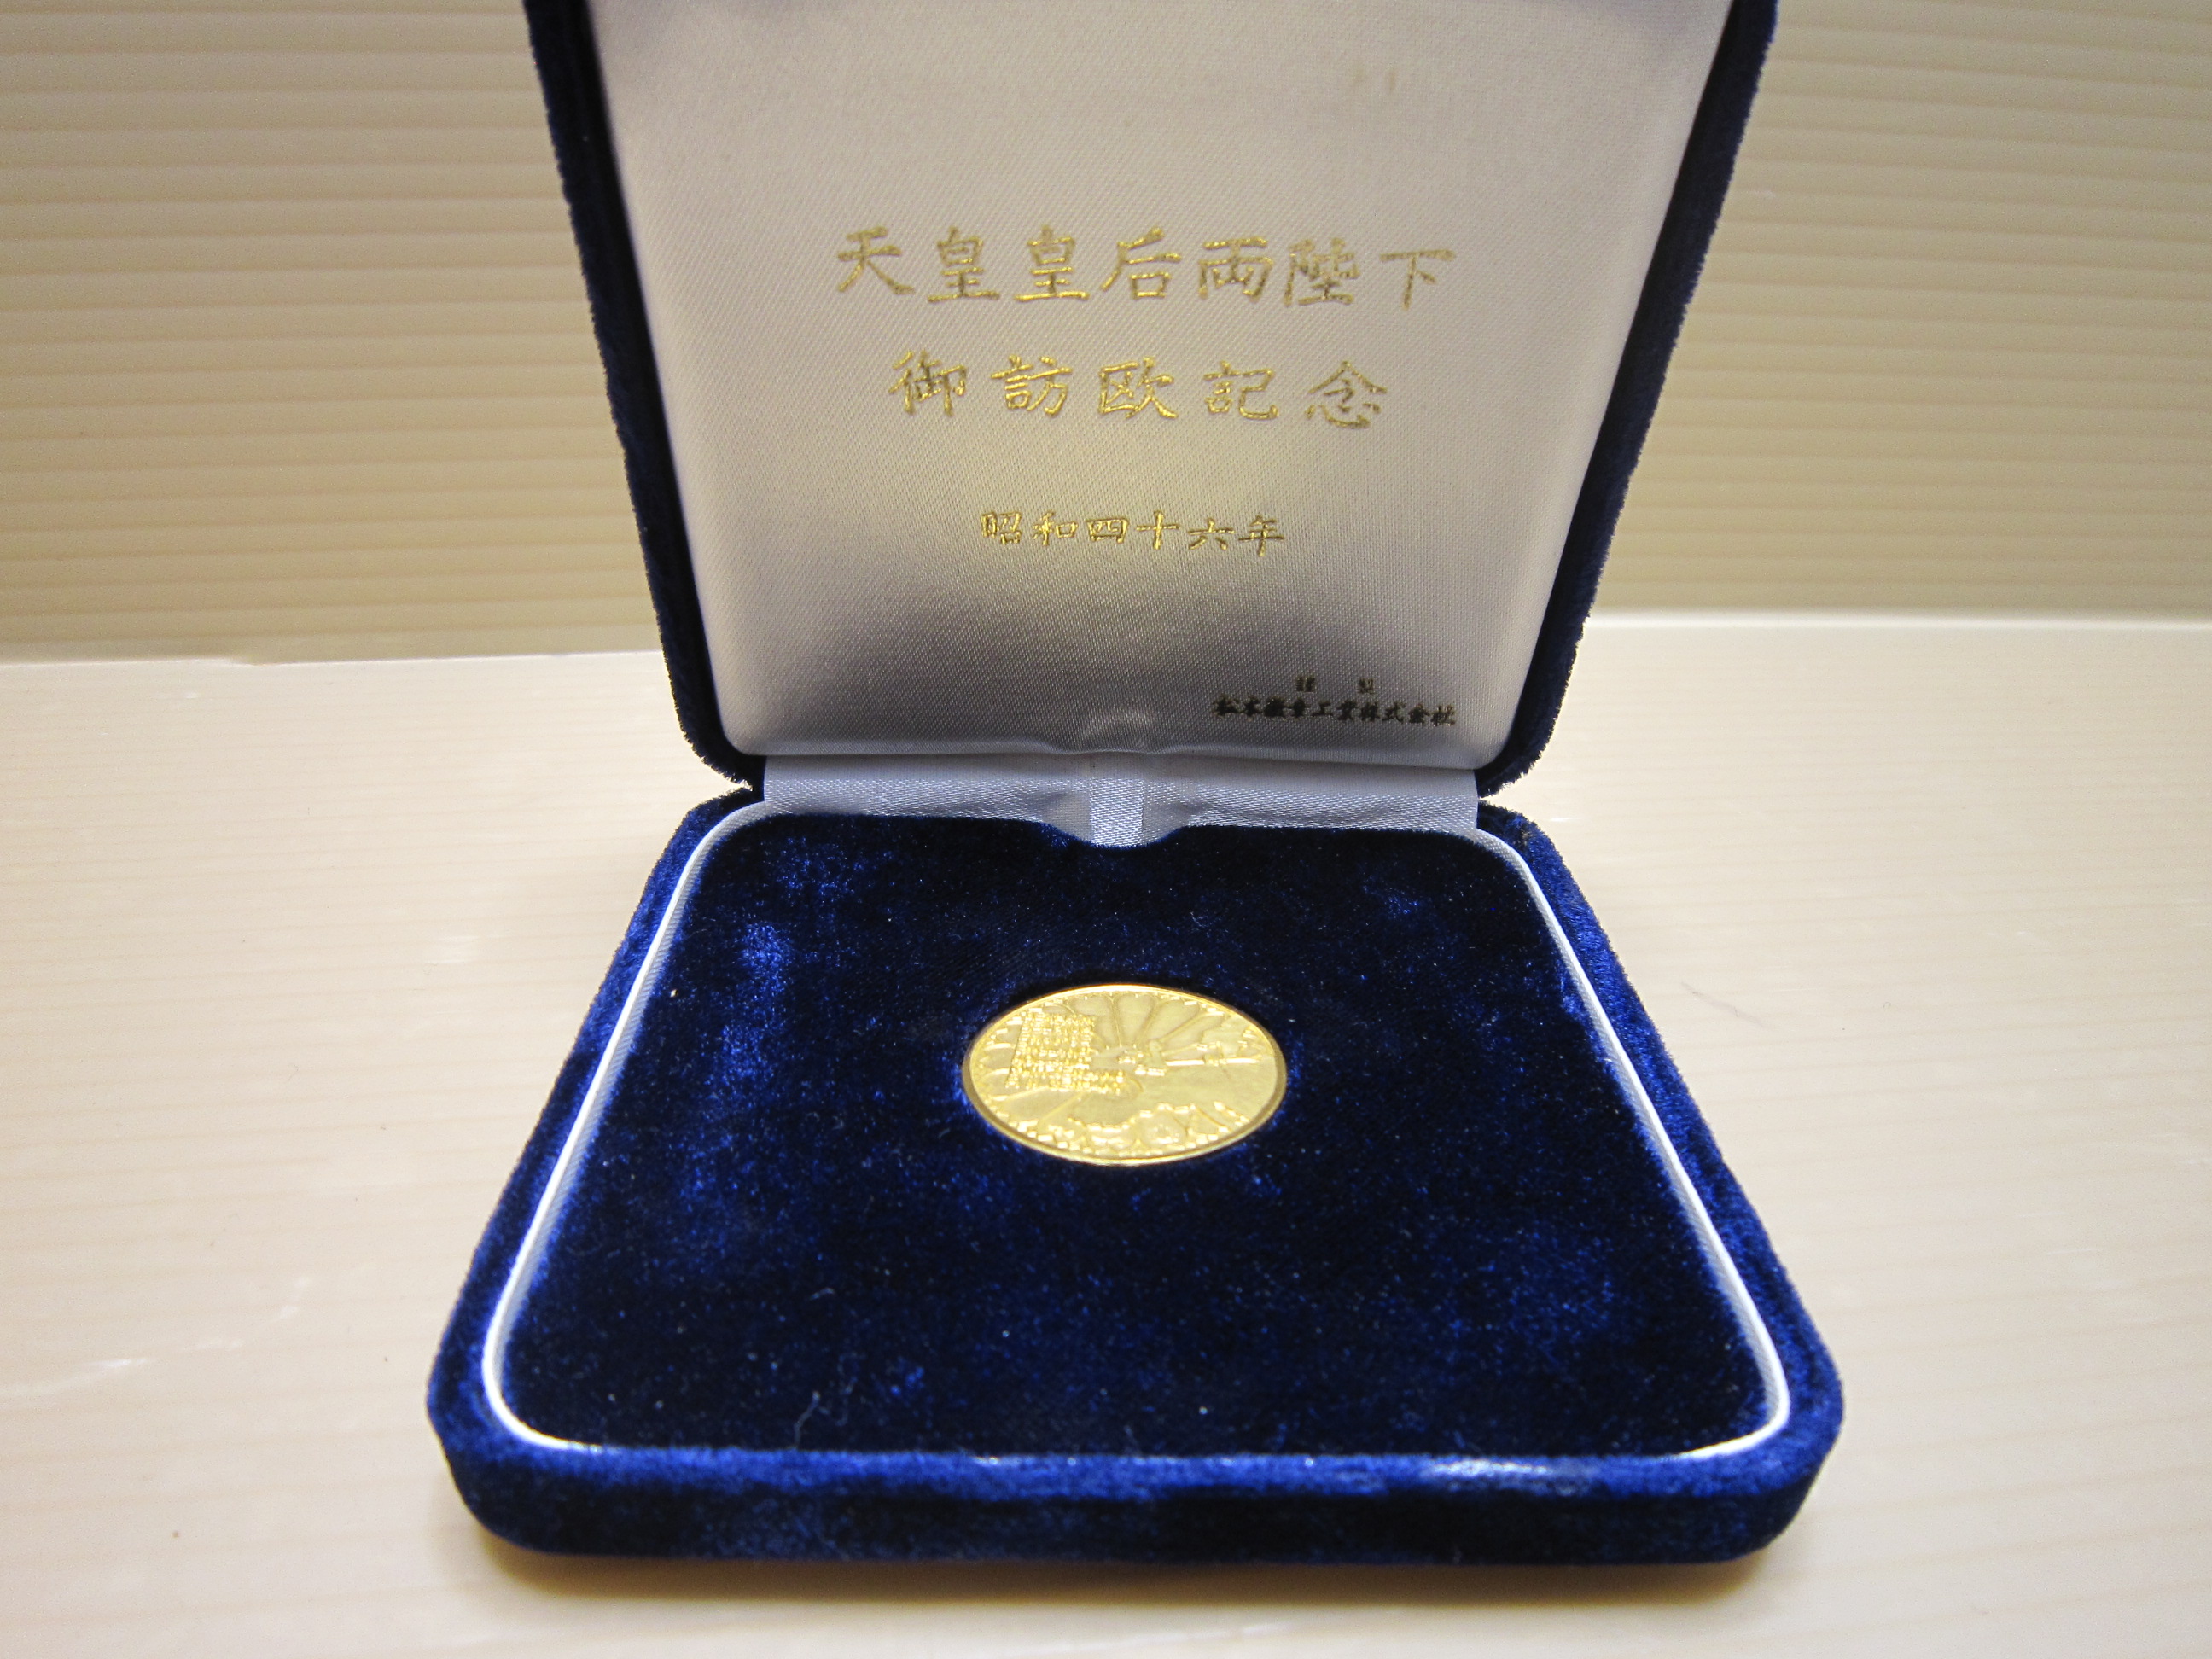 1975年 天皇皇后両陛下公式御訪米記念メダル - 旧貨幣/金貨/銀貨/記念硬貨